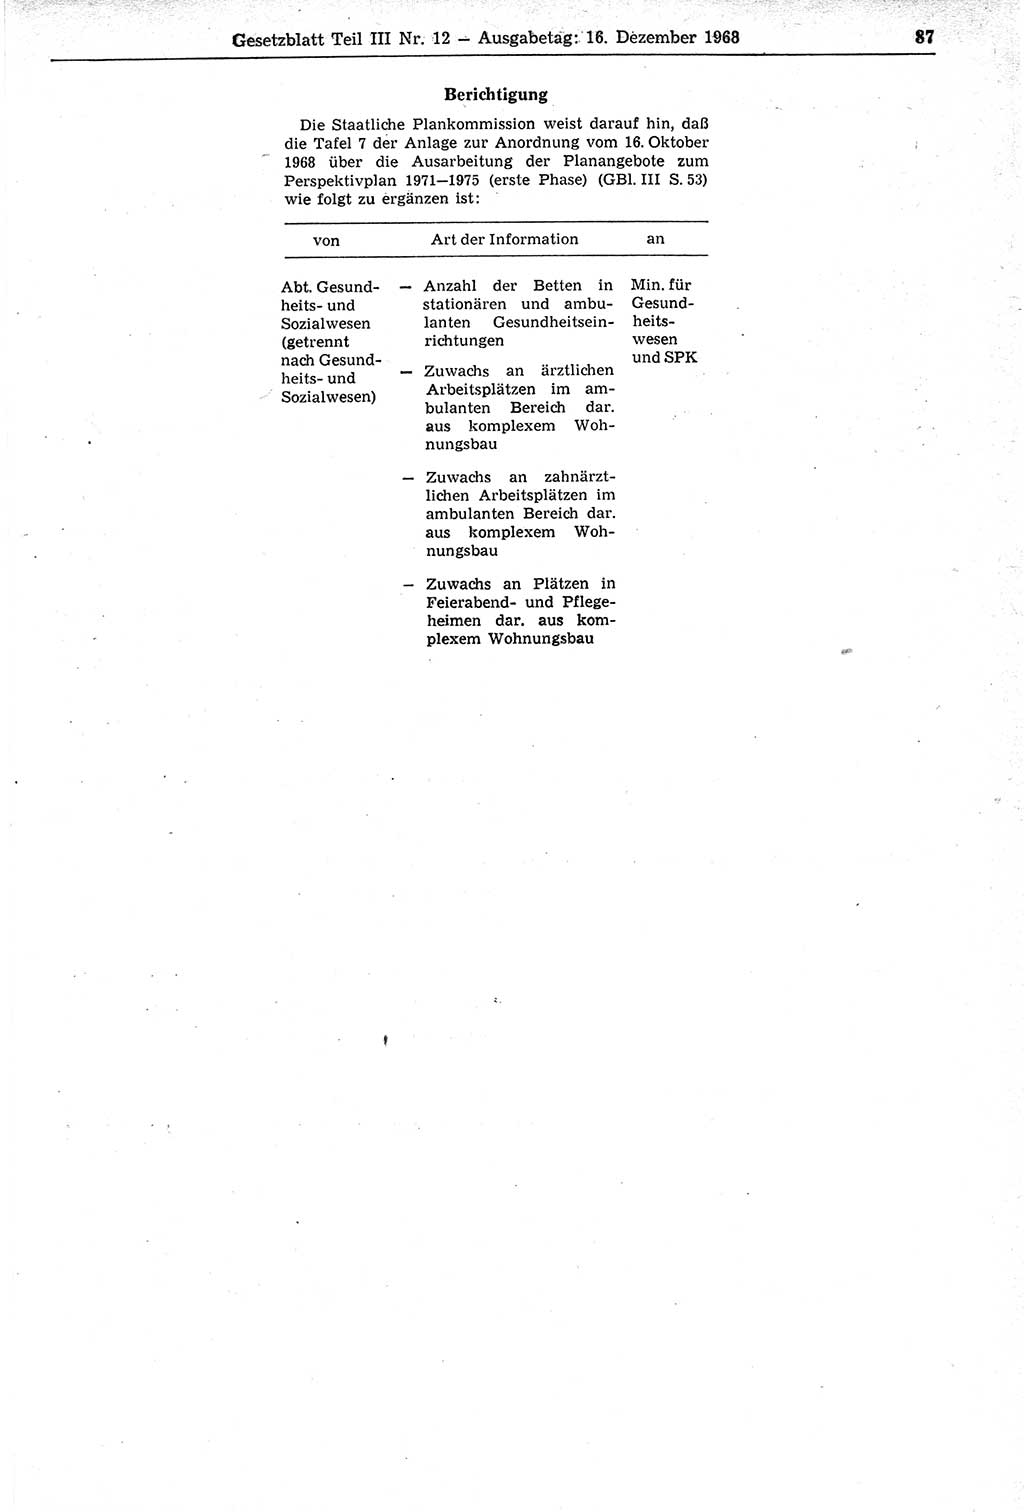 Gesetzblatt (GBl.) der Deutschen Demokratischen Republik (DDR) Teil ⅠⅠⅠ 1968, Seite 87 (GBl. DDR ⅠⅠⅠ 1968, S. 87)